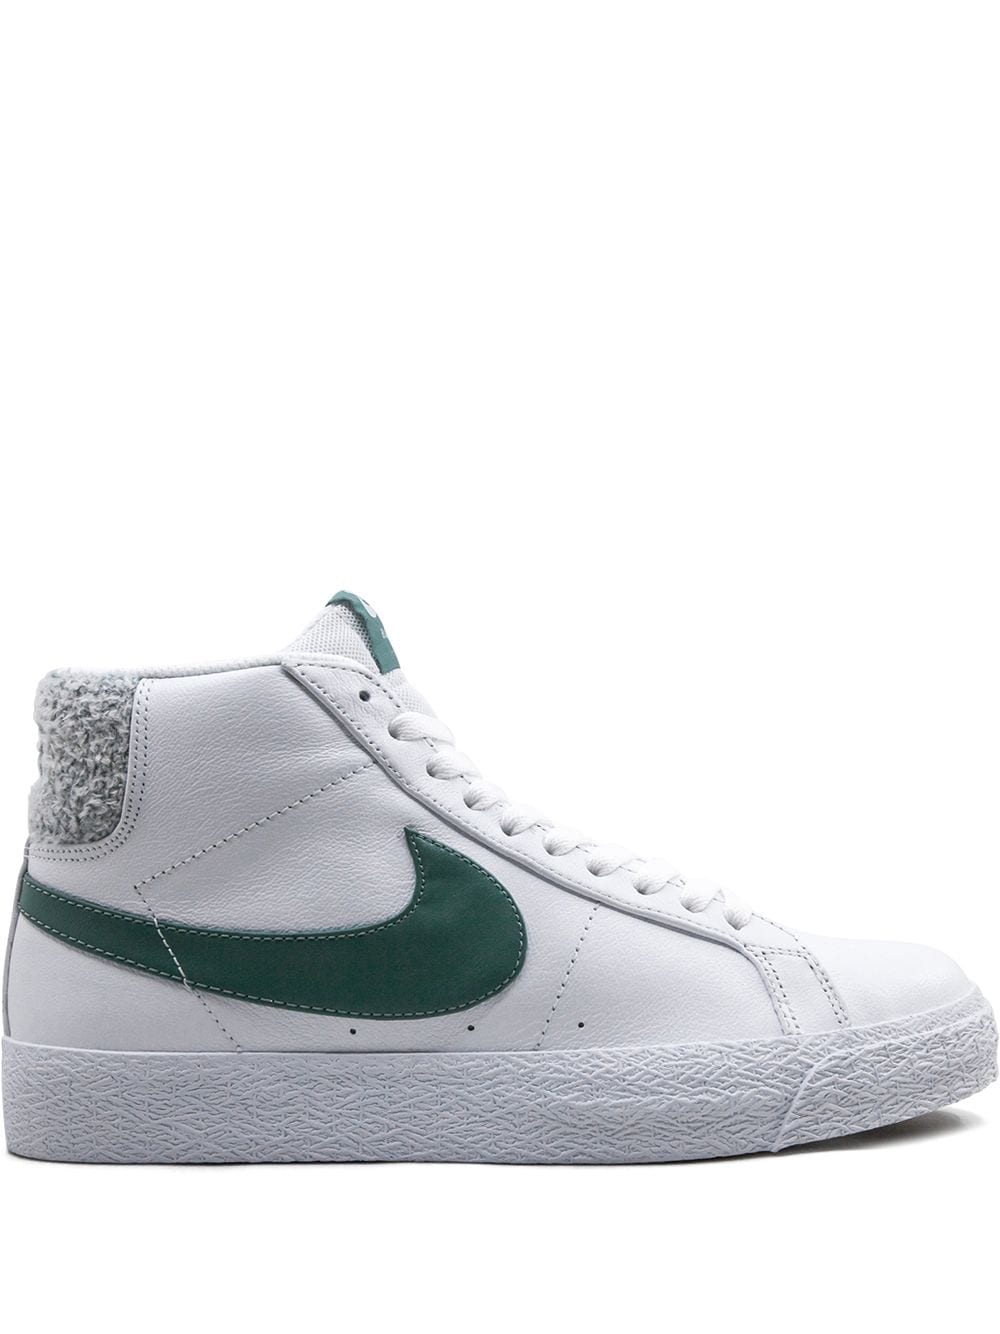 Nike SB Zoom Blazer Mid Pemium "Bicoastal Green" sneakers - White von Nike